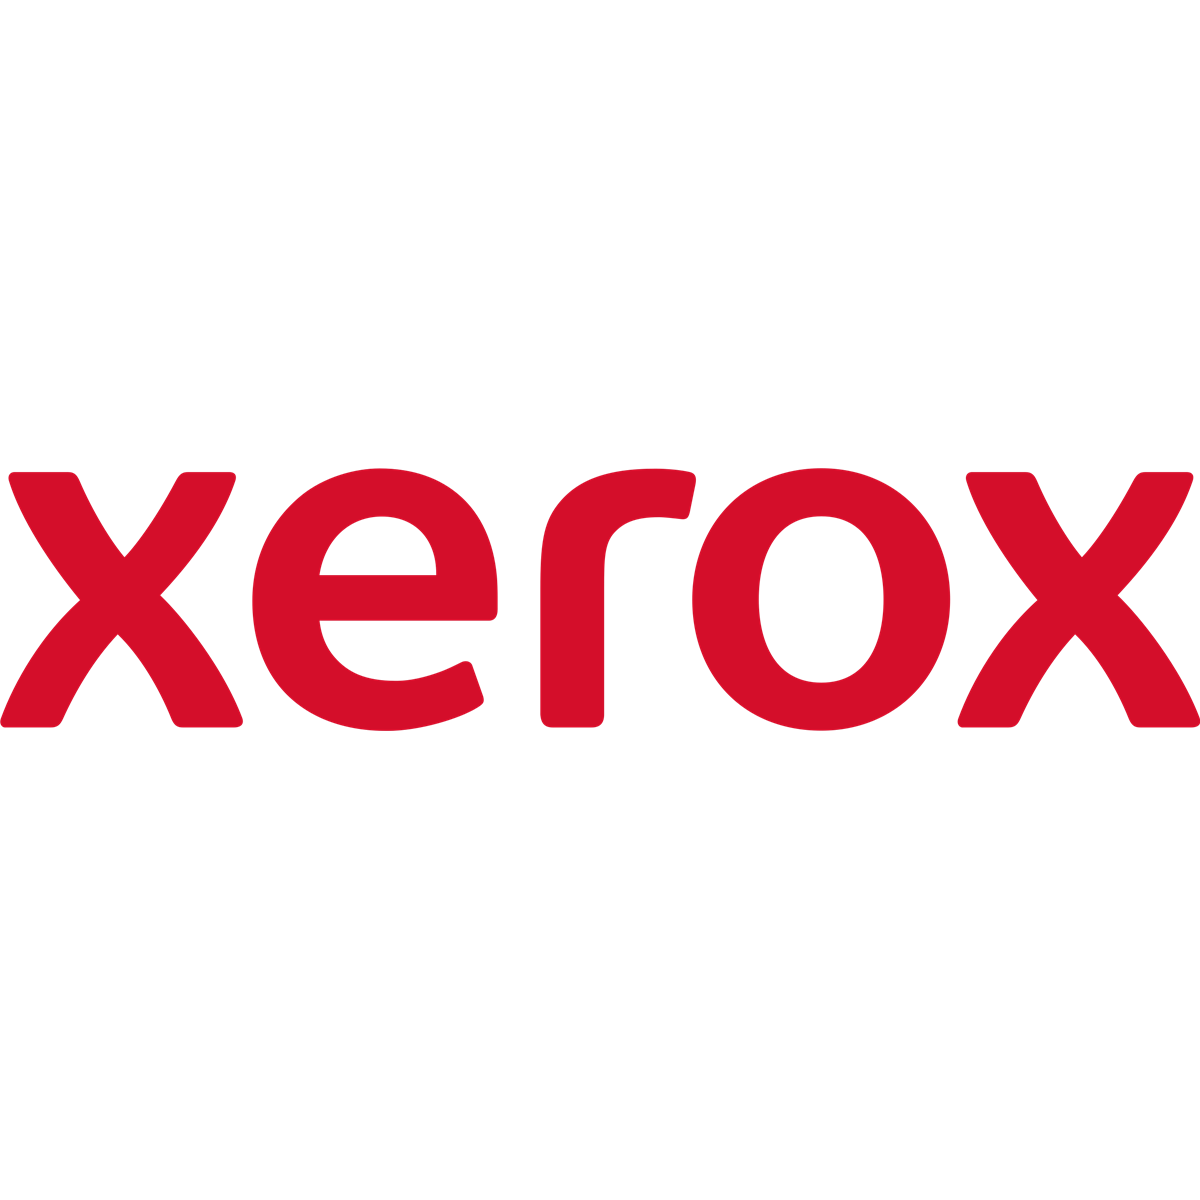 XEROX 497K06800 OCT Fan Kit